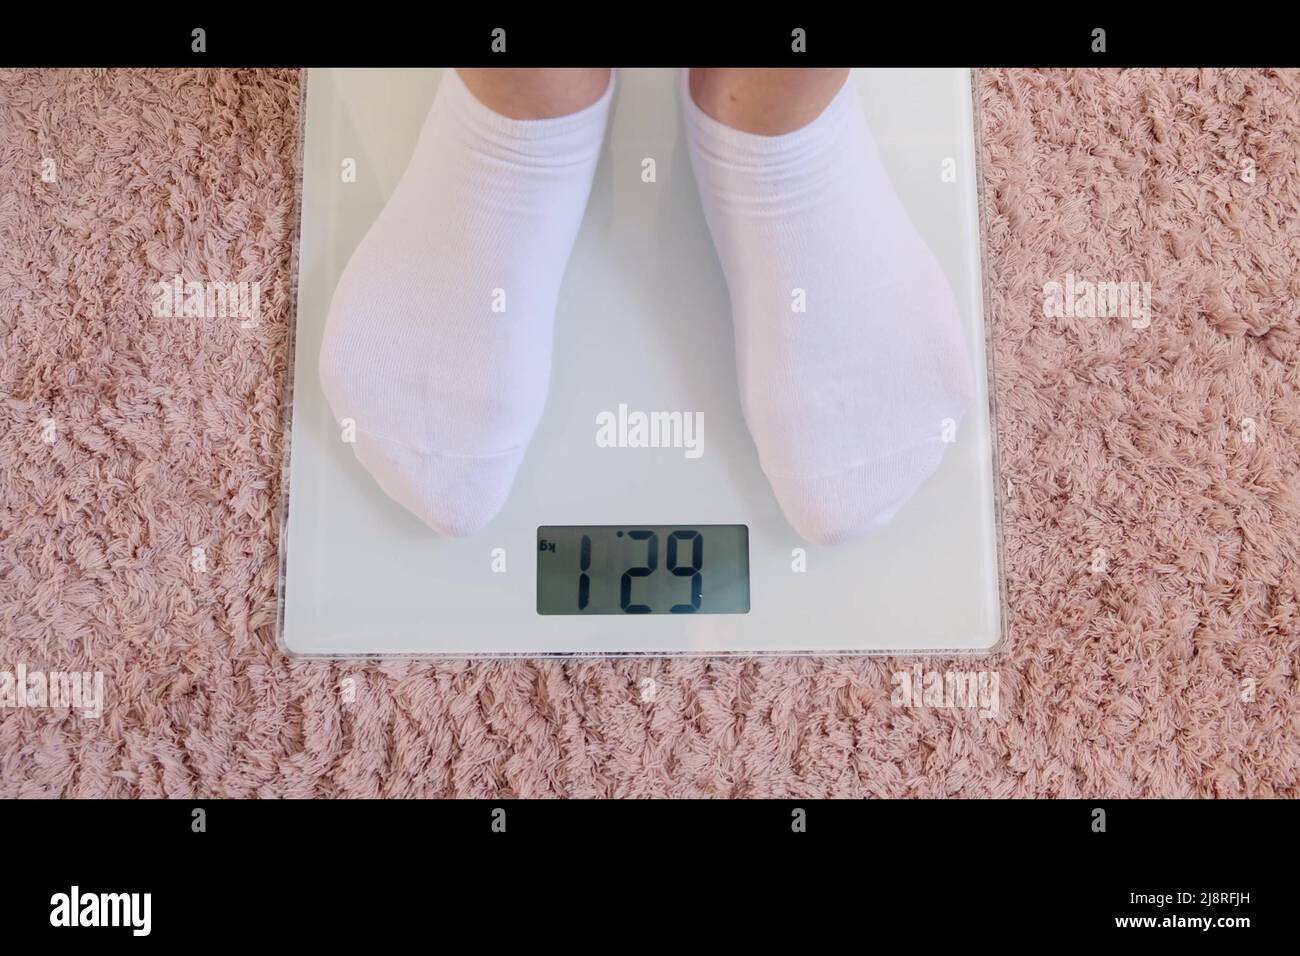 Frauenbeine in weißen Socken stehen auf einer digitalen Waage, um das  Gewicht auf dem Boden im Zimmer zu überprüfen. Schuppen auf rosa Teppich.  Nahaufnahme Stockfotografie - Alamy